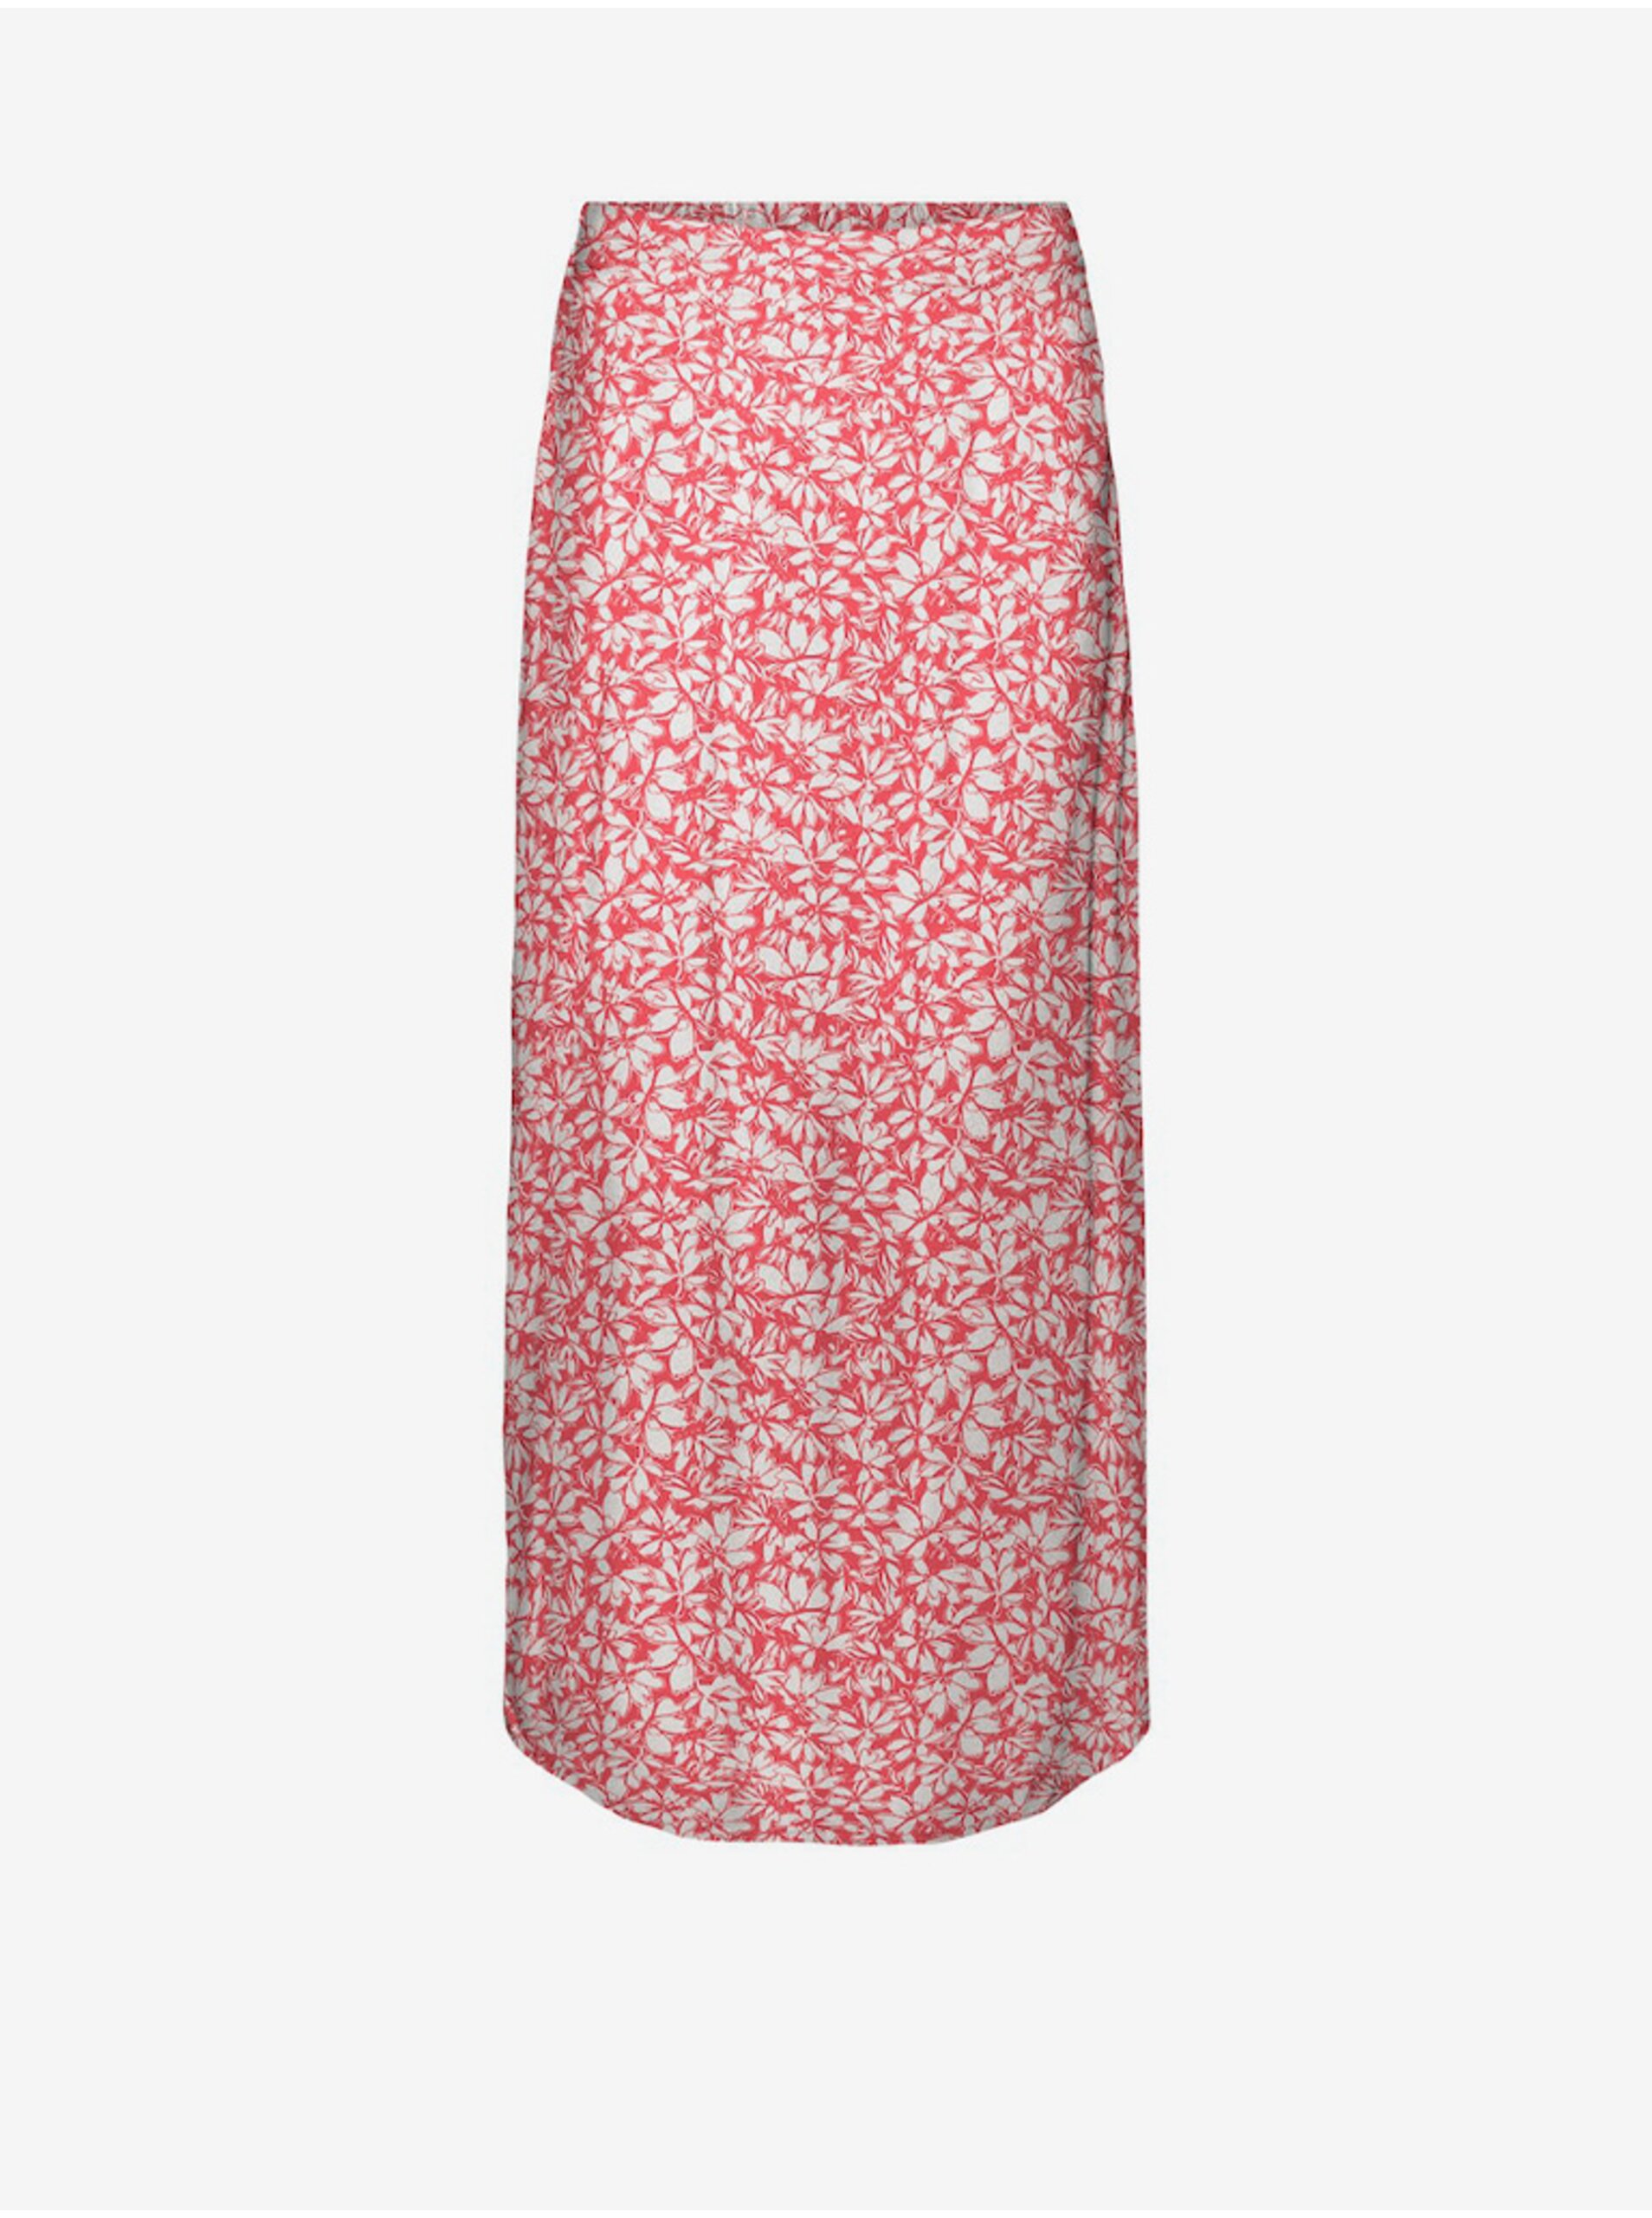 E-shop Bílo-červená dámská maxi sukně Vero Moda Menny